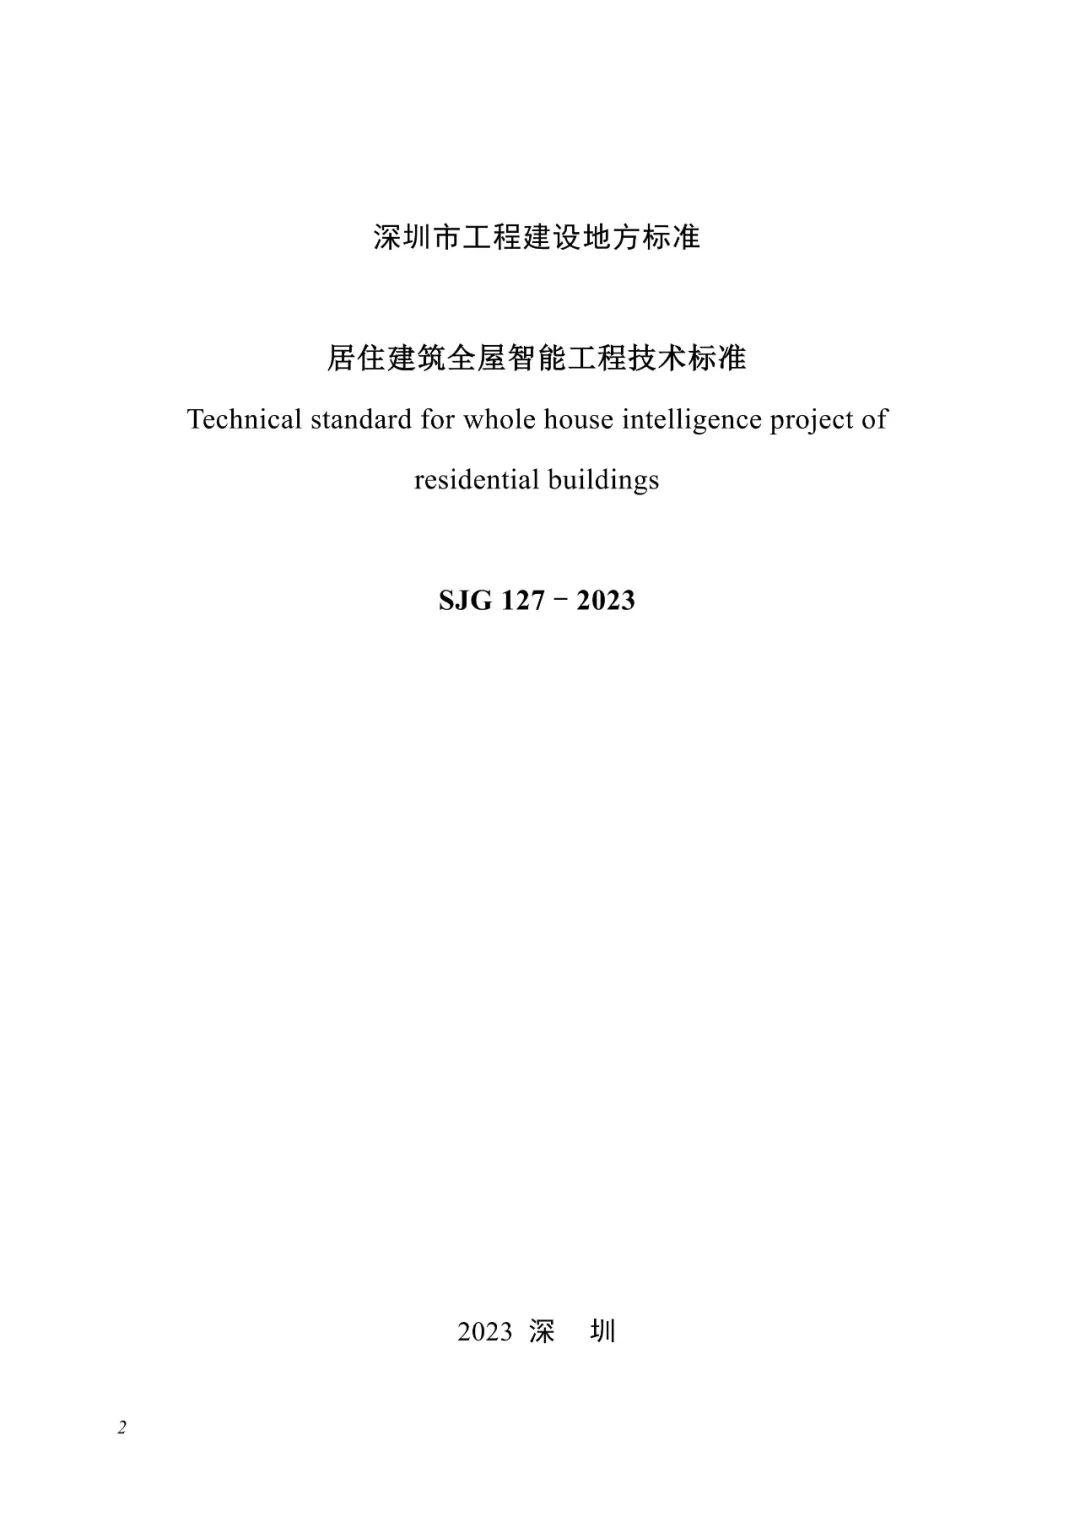 深圳市住建局关于发布《居住建筑全屋智能工程技术标准》的通知